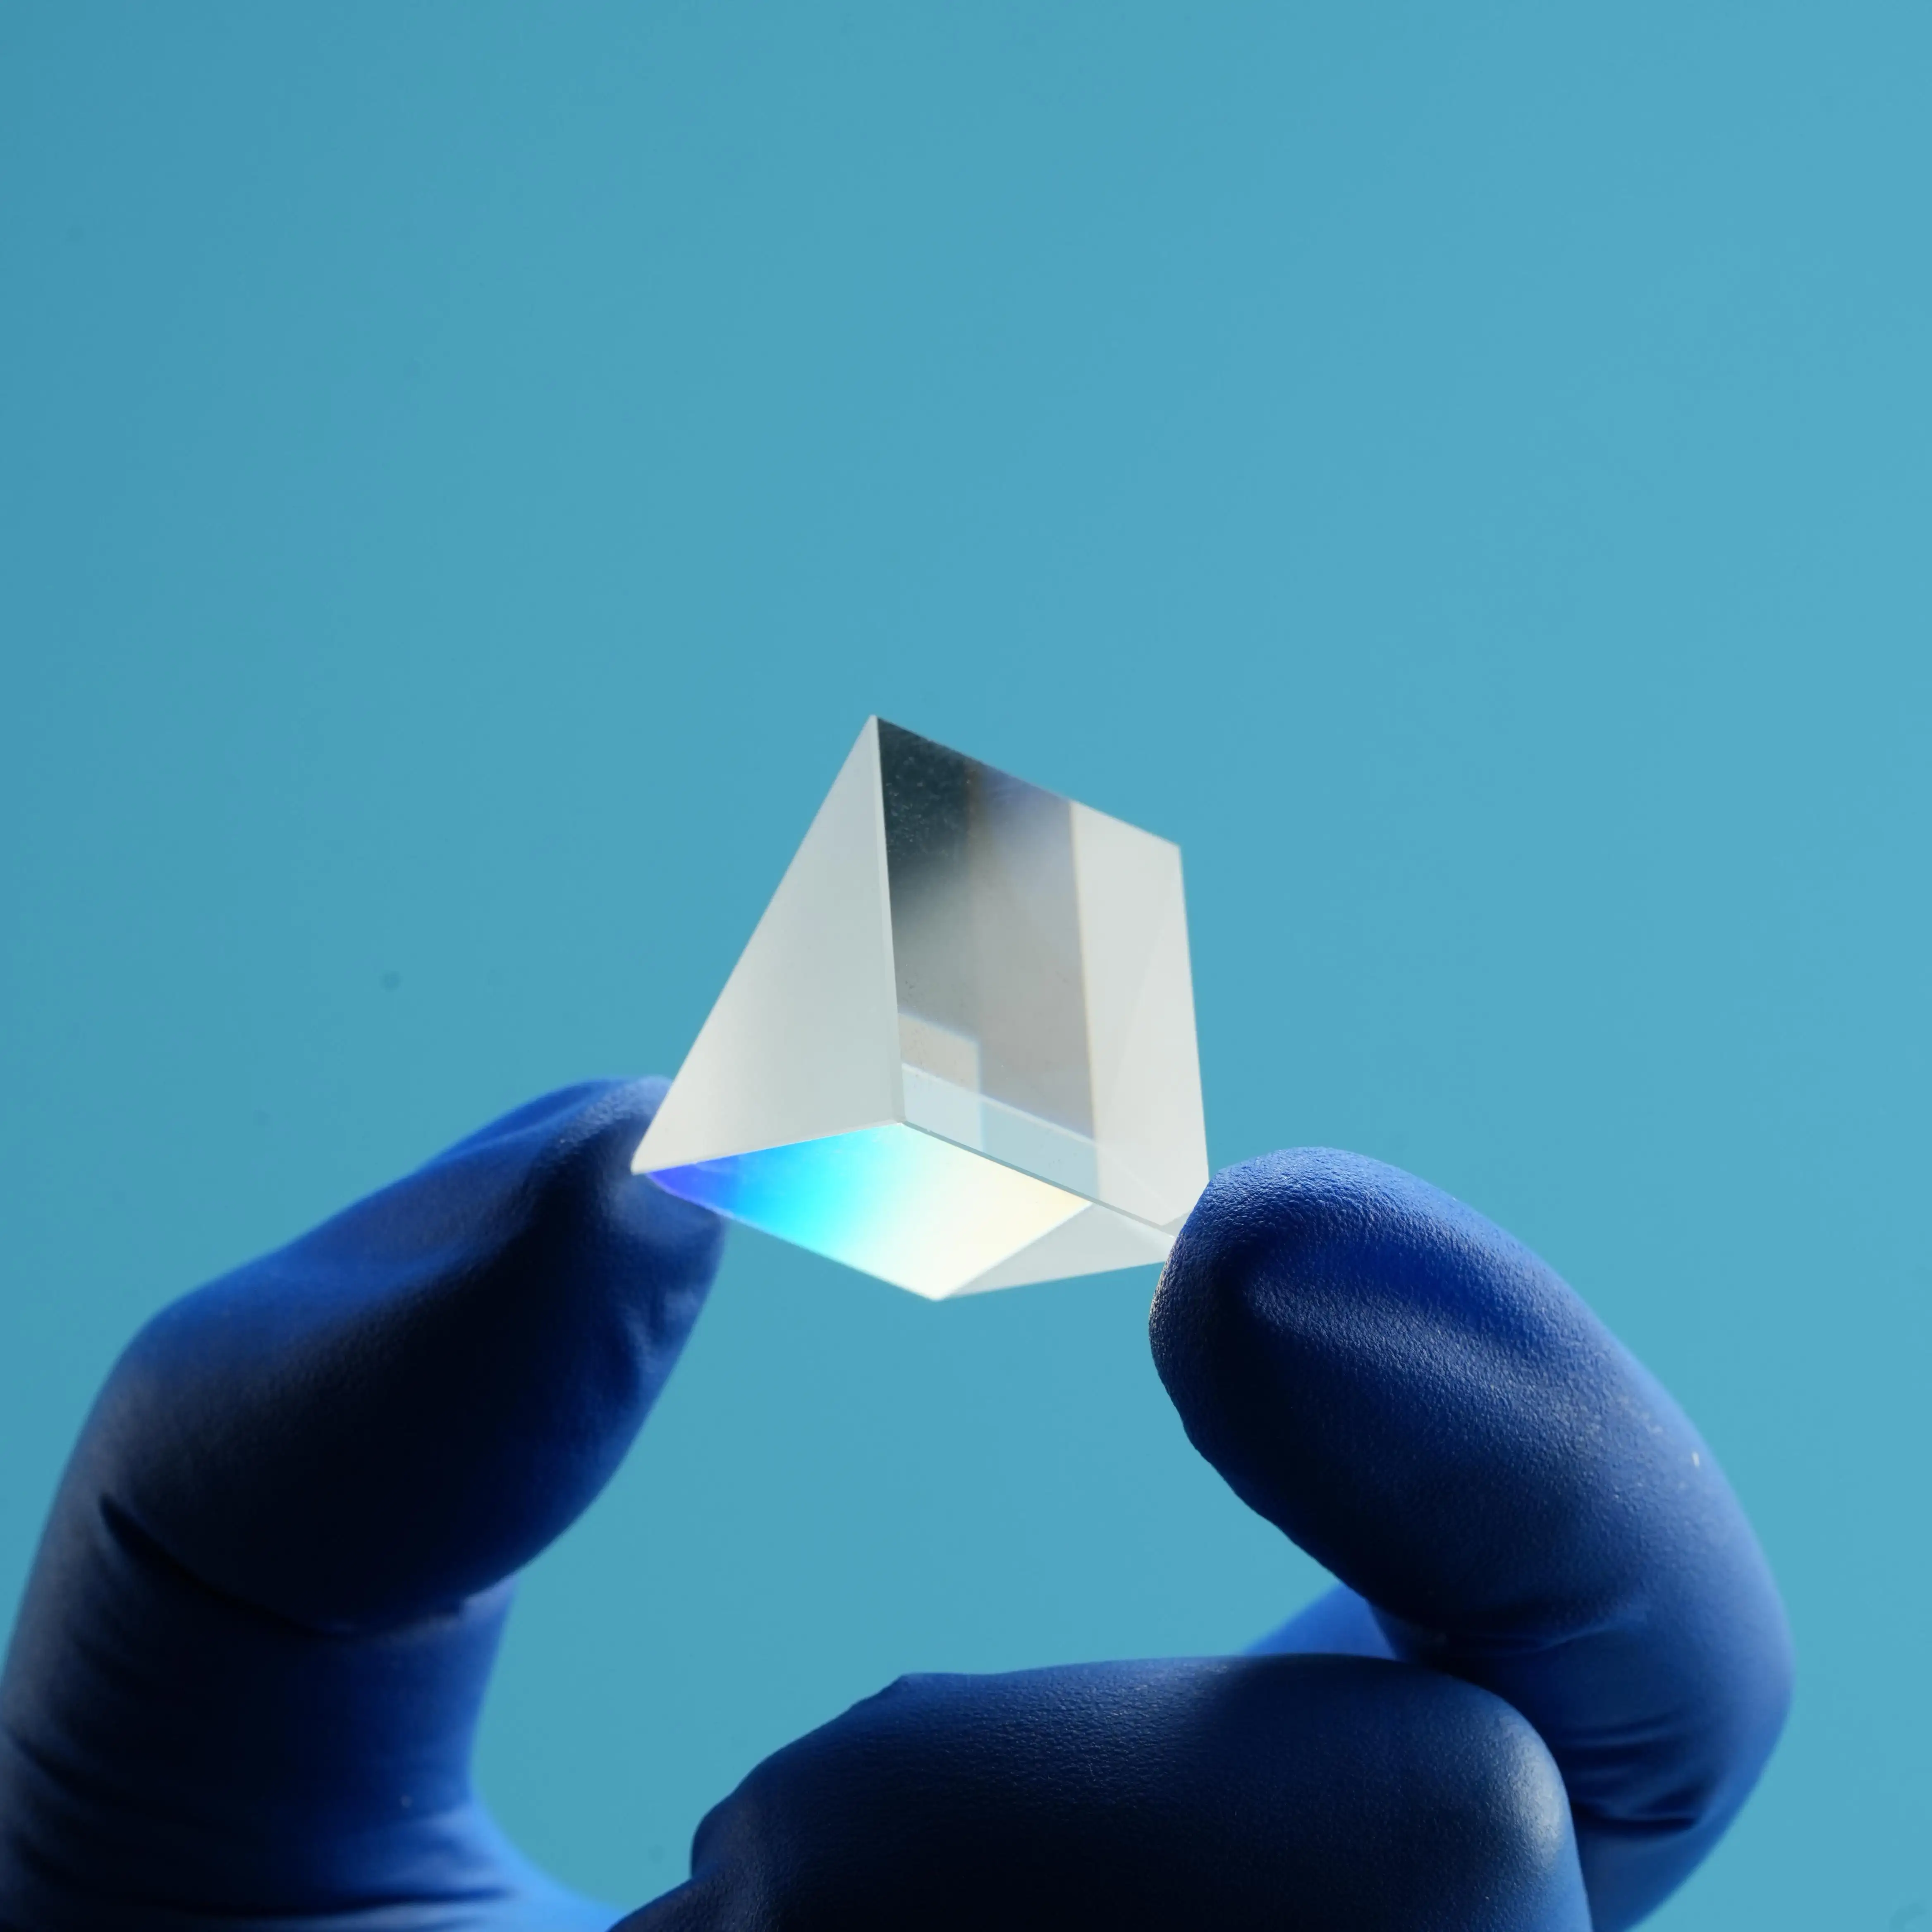 Mini prisma transparente personalizado de buena calidad, Bk7, 150Mm, recubrimiento óptico de cristal de ángulo recto, Prisma equilátero para fotografía